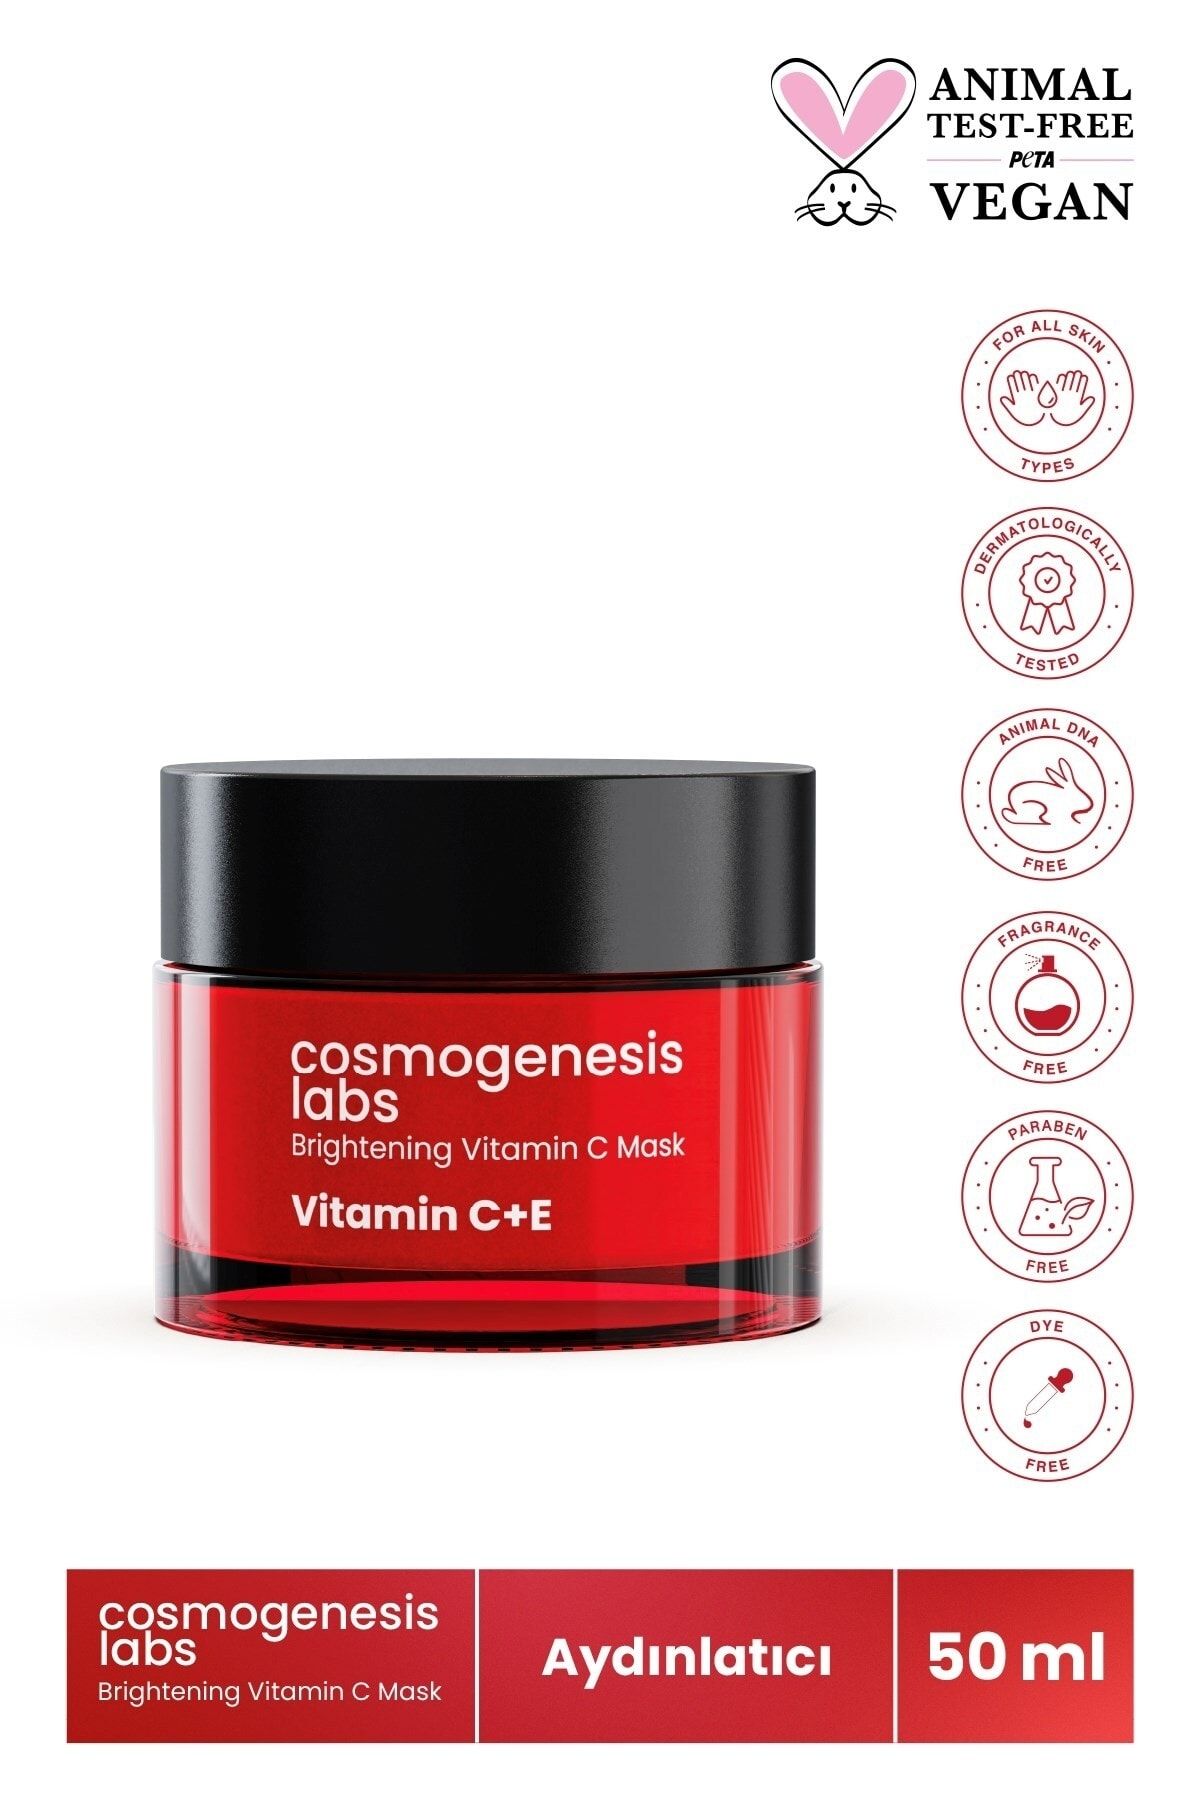 Cosmogenesis Labs Aydınlatıcı C Vitamini Maske 50ml Vegan Pürüzsüzleştirici Nemlendirici Antioksidan (%5 VİTAMİN C)